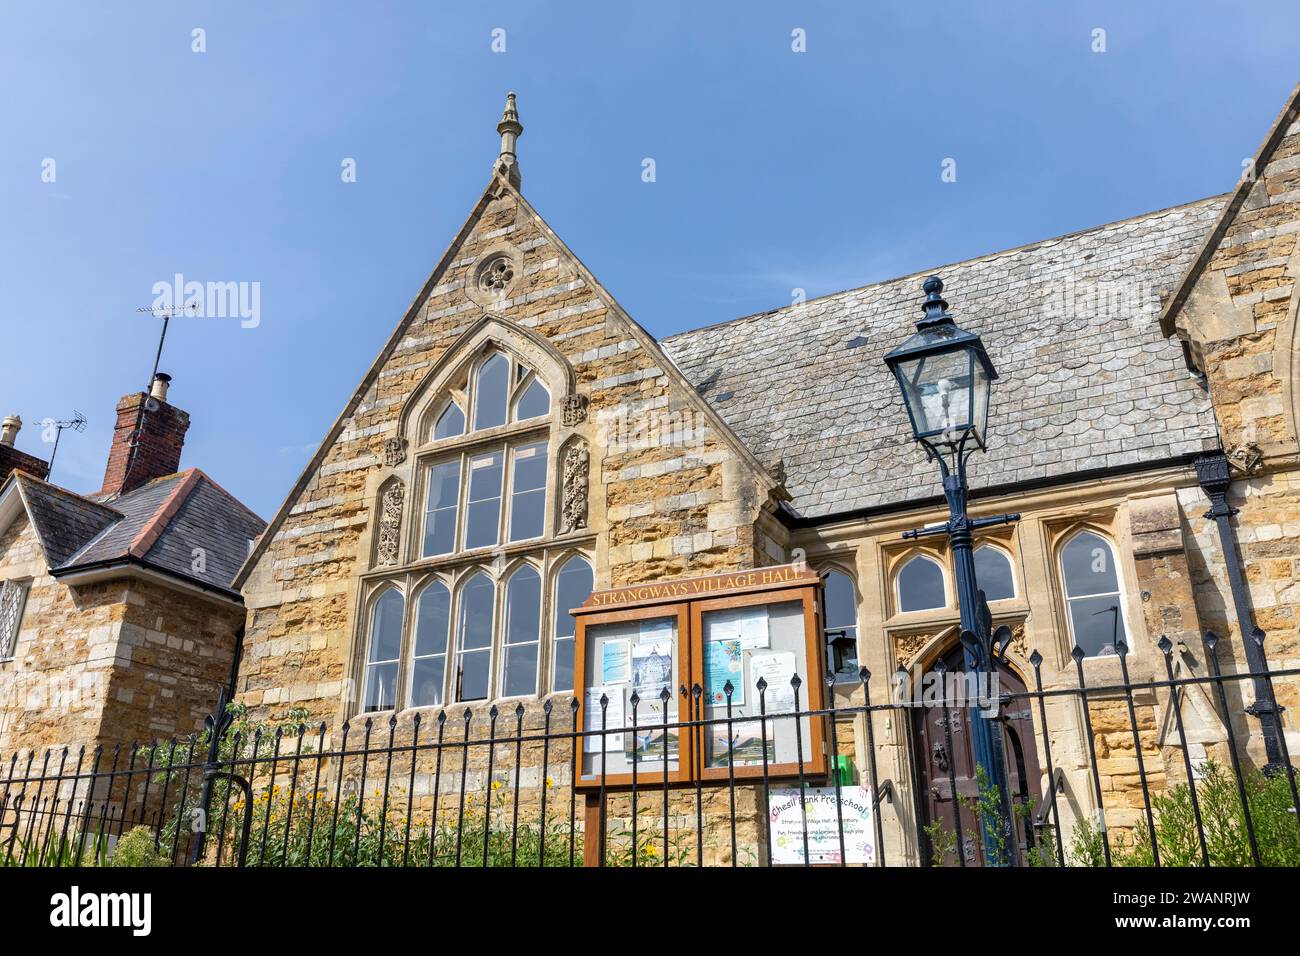 Strangways Village Hall, anciennement une école de village, est un bâtiment classé de 2e année à Abbotsbury, Dorset, Angleterre, Royaume-Uni, septembre 2023 Banque D'Images